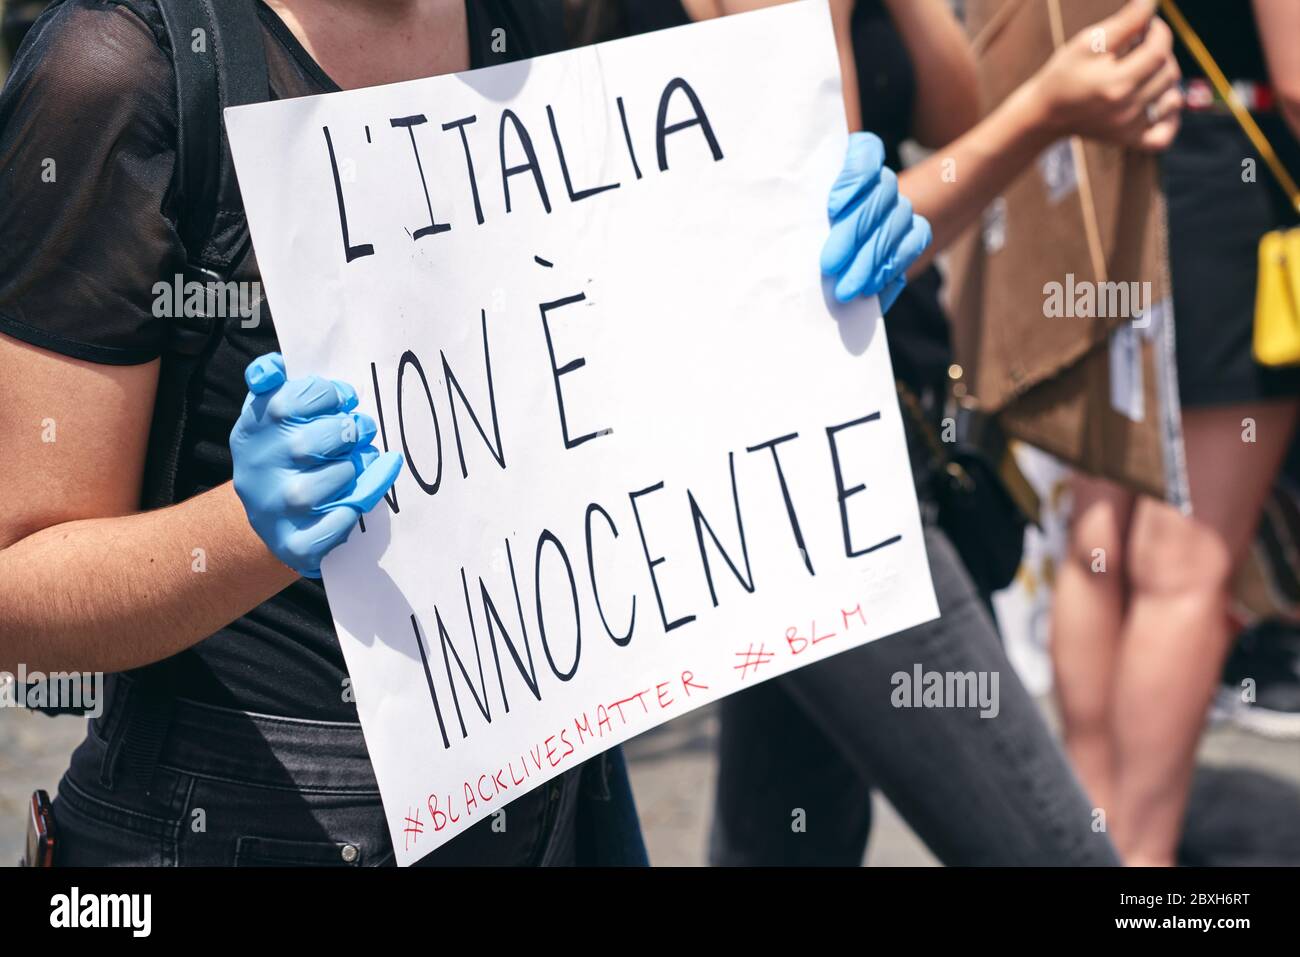 Black Lives Matter, protesta in memoria di George Floyd contro il razzismo. Hands in Blue Guanti tenere un segno in Italiano, lettura: L'Italia non è innocente Foto Stock